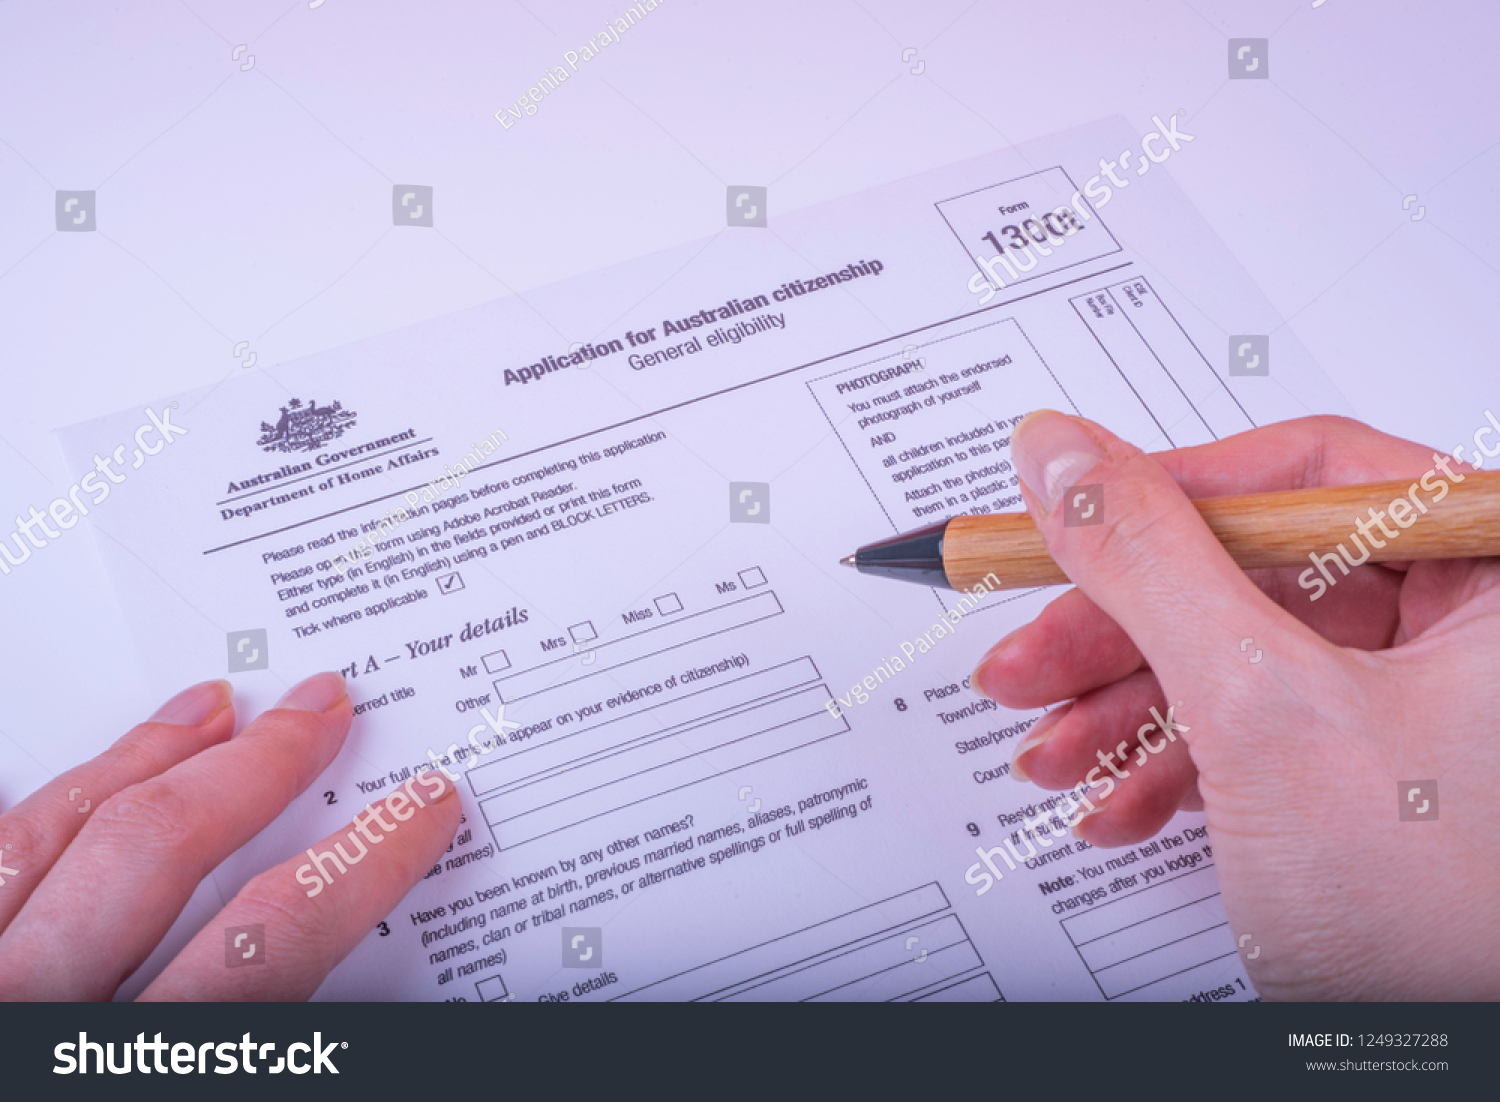 Application Form 1300t Australian Citizenship Photo Now)